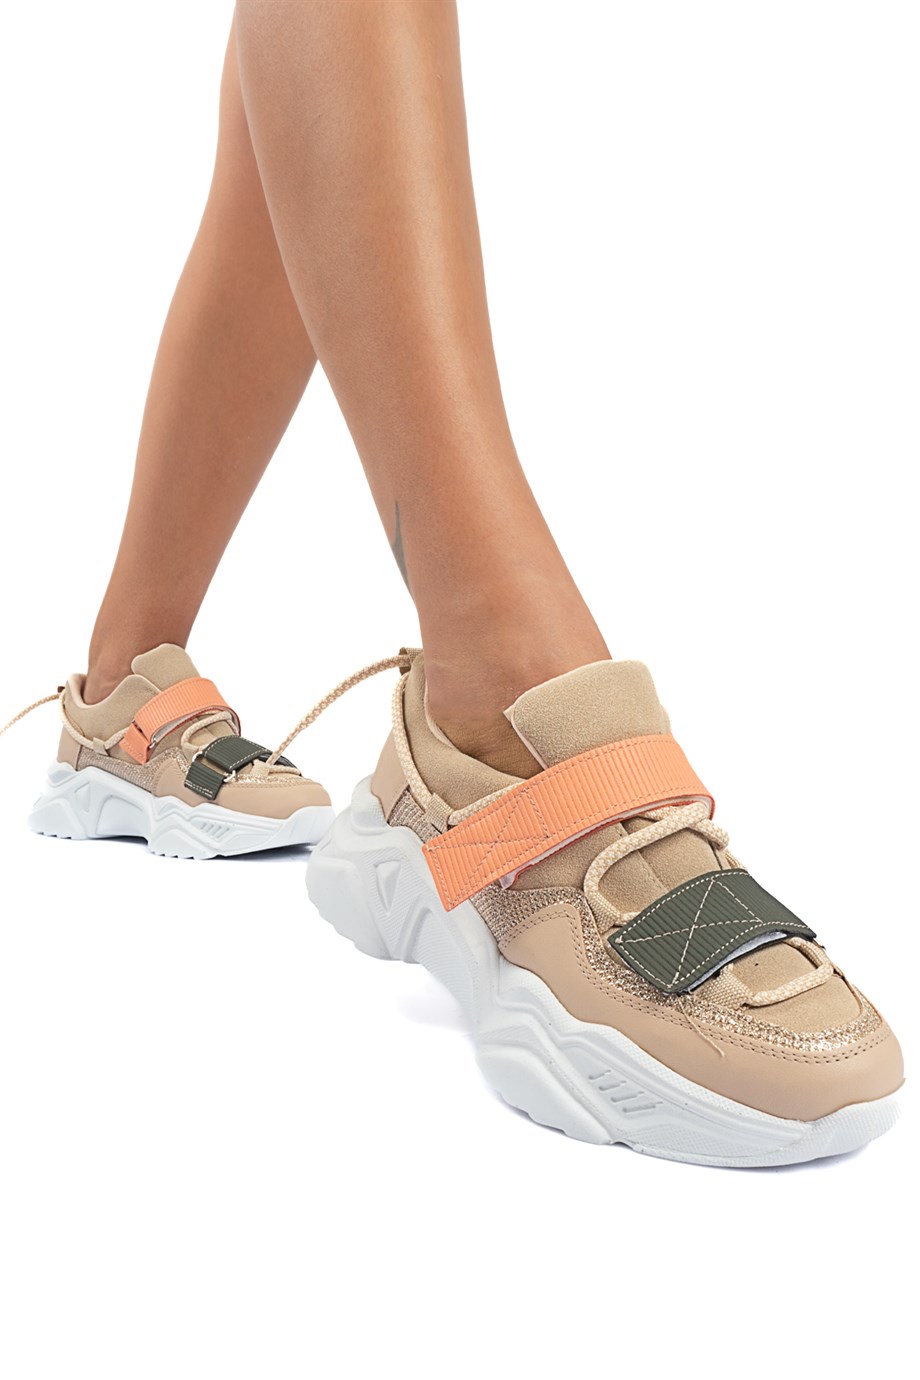 MODAGON | Yeni Sezon Kadın Sneaker Modelleri | Montre Bağcıklı Cırt Detaylı  Yüksek Taban Sneakers Spor Ayakkabı